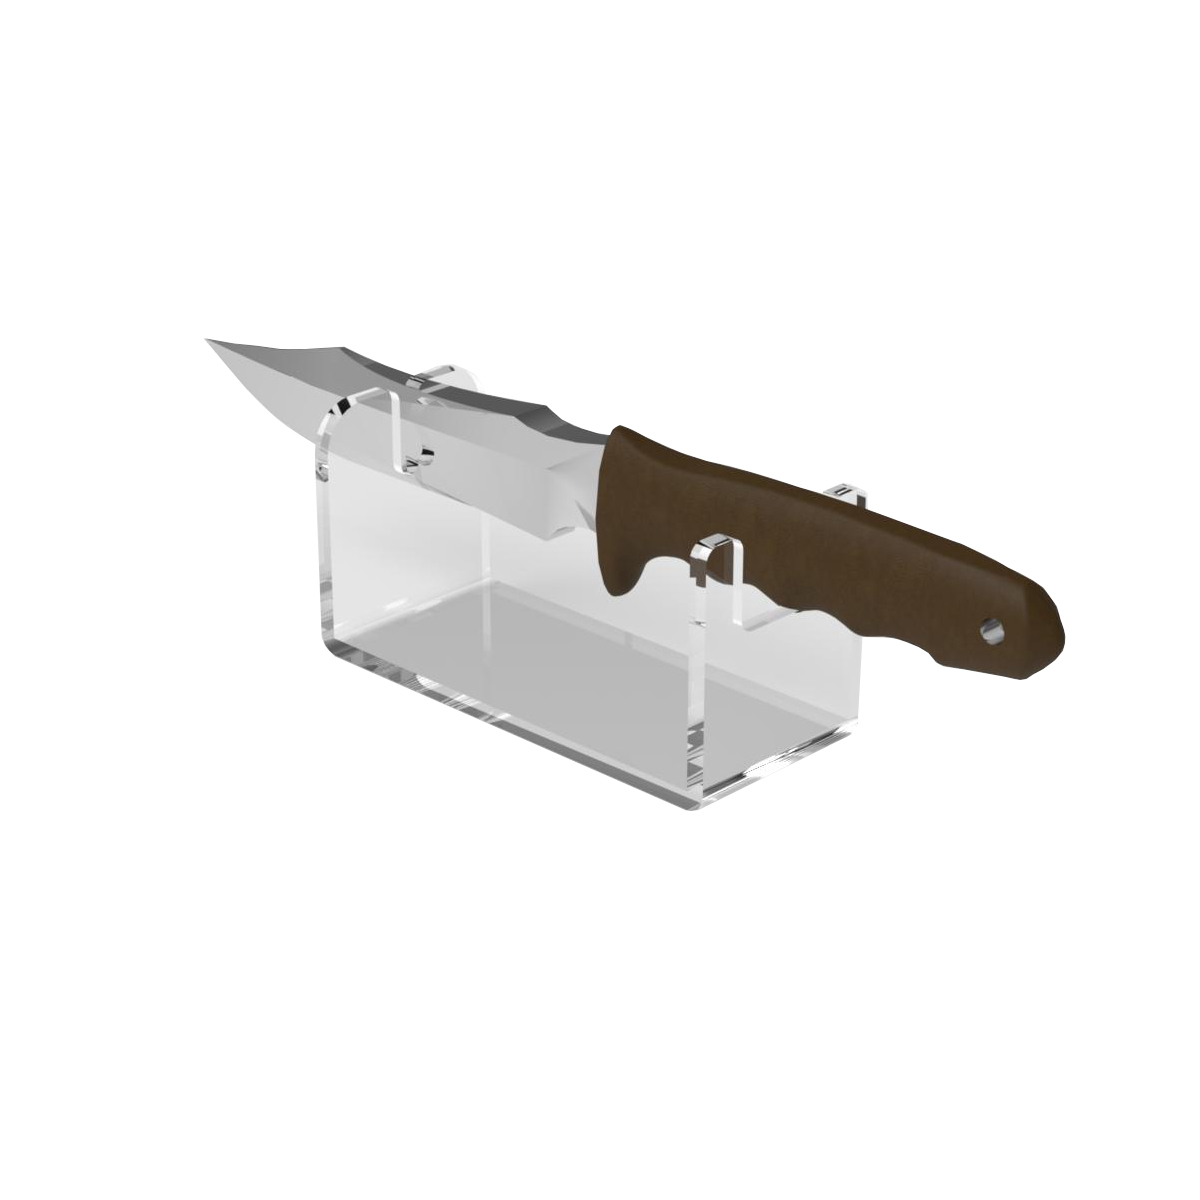 Подставка для ножей - Чертежи, 3D Модели, Проекты, Разное